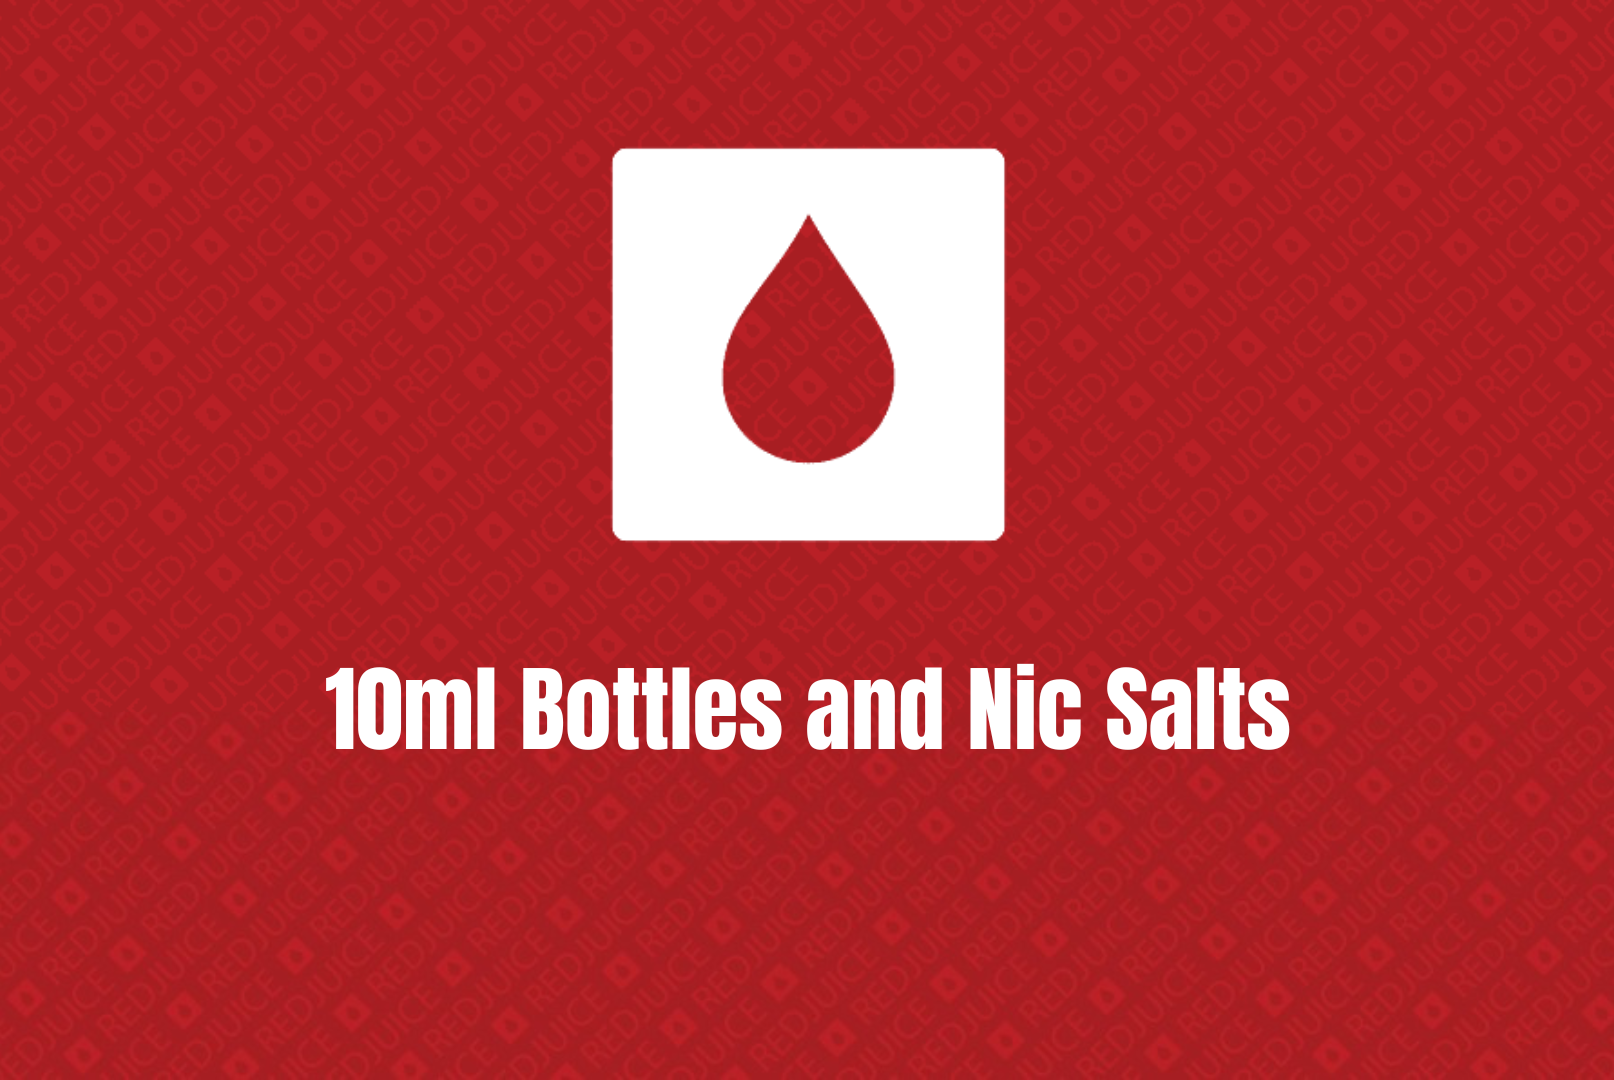 10ml Bottles and Nic Salts